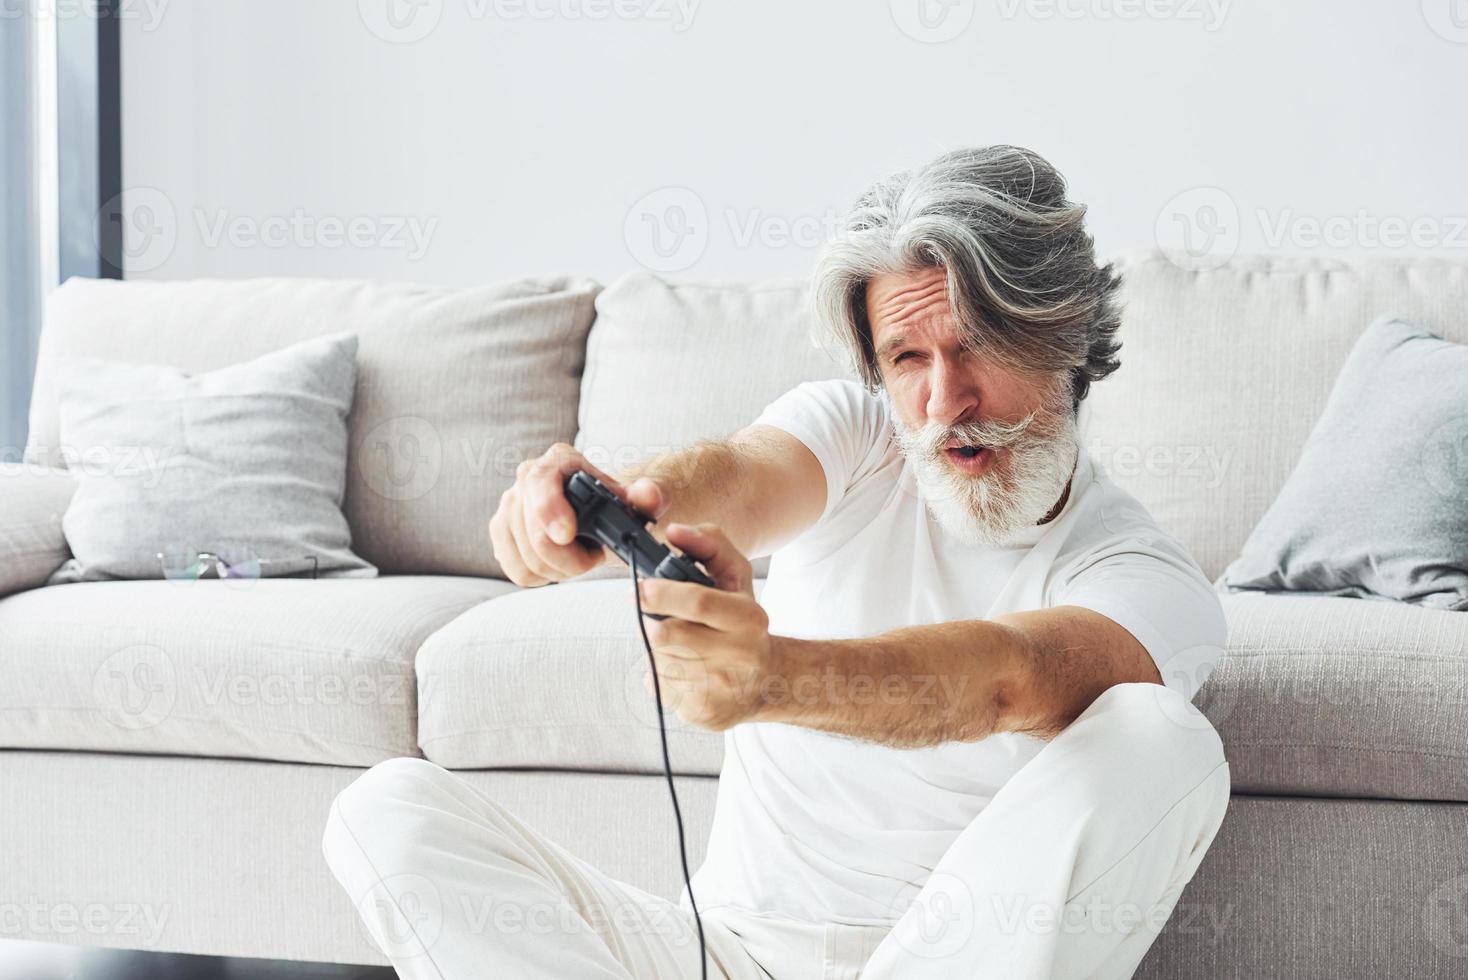 joue au jeu vidéo en utilisant le contrôleur. homme moderne et élégant aux cheveux gris et à la barbe à l'intérieur photo